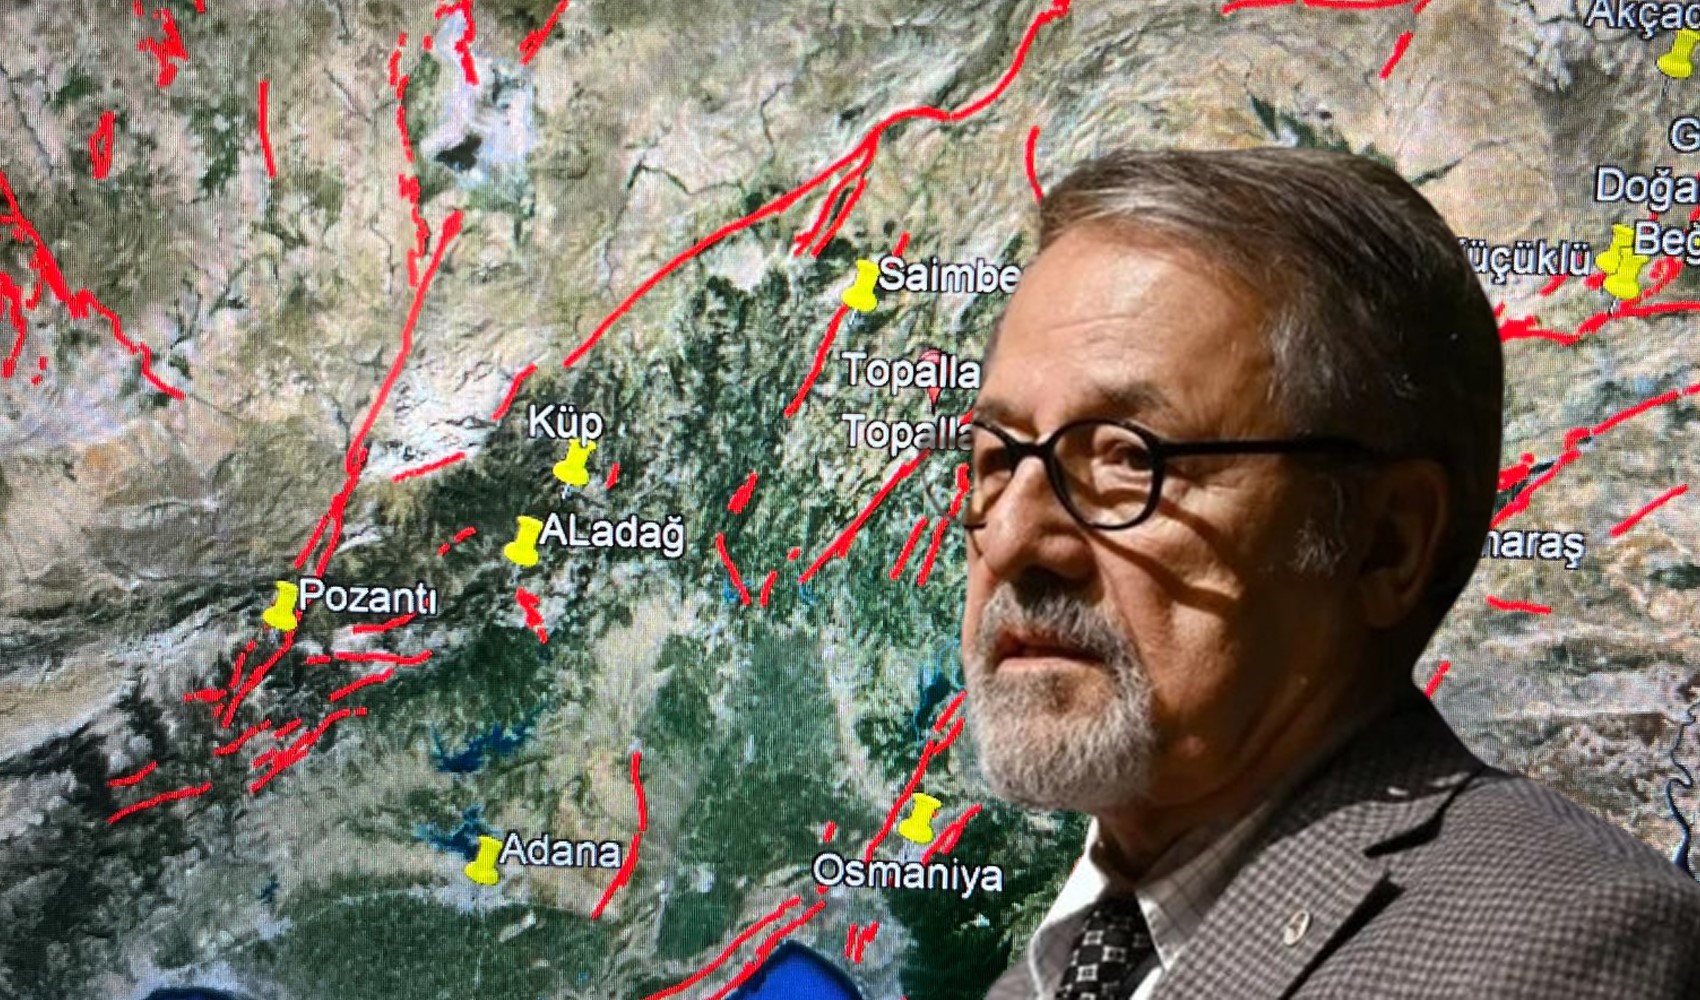 Prof. Dr. Naci Görür'den Muğla ve Adana açıklaması: 'Daha büyük deprem riski' diyerek uyardı